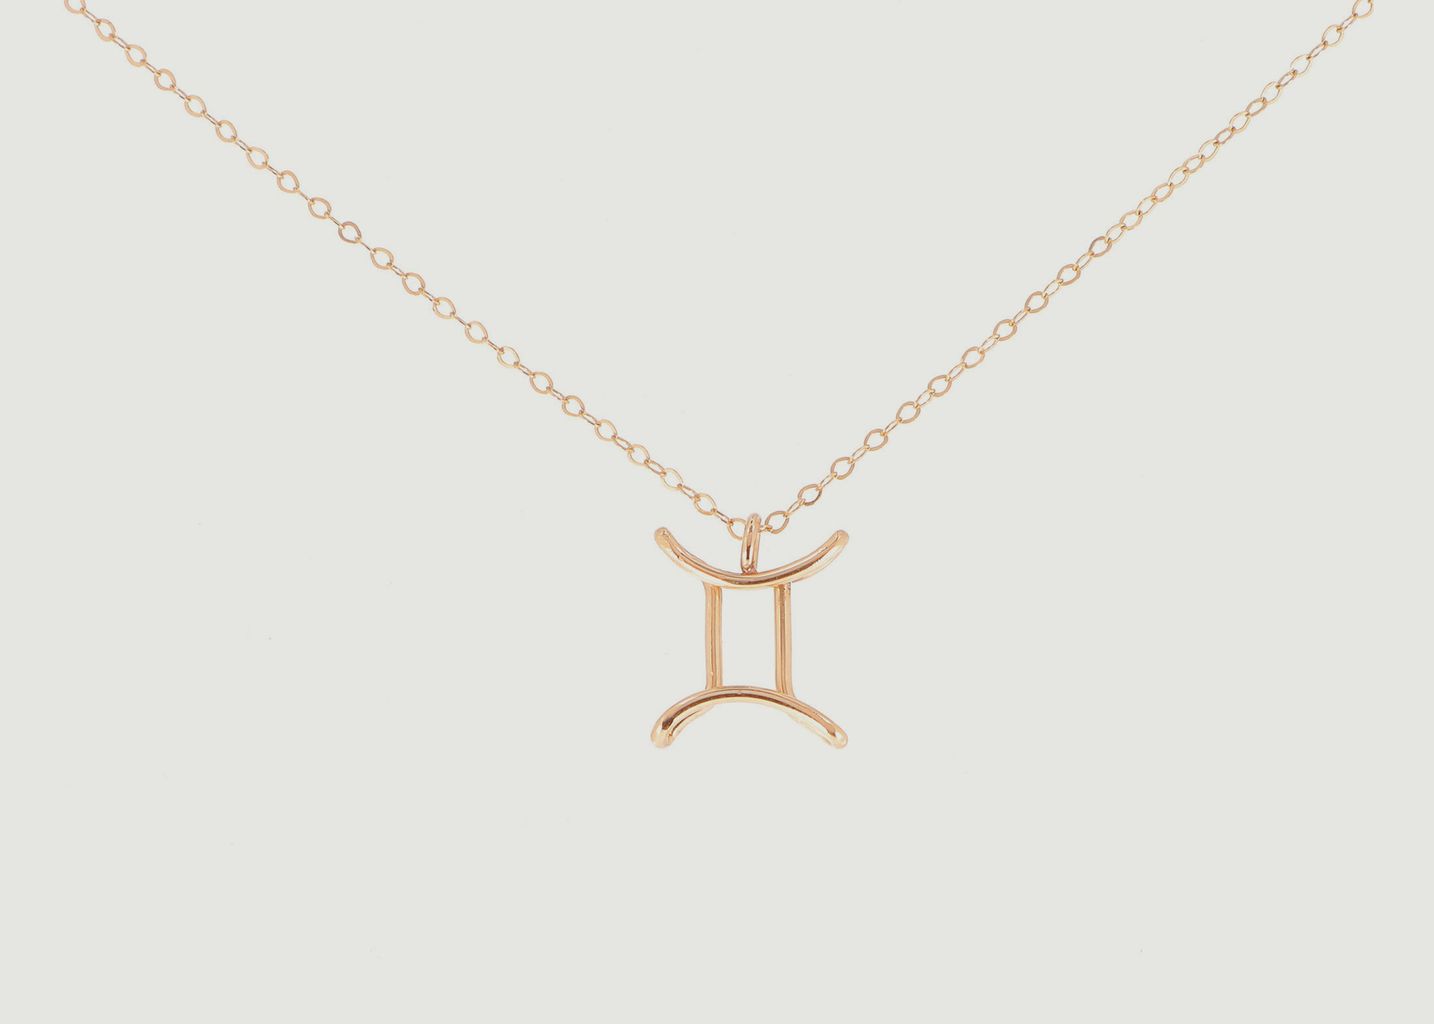 Astro Gémeaux chain necklace with pendant - Atelier Paulin